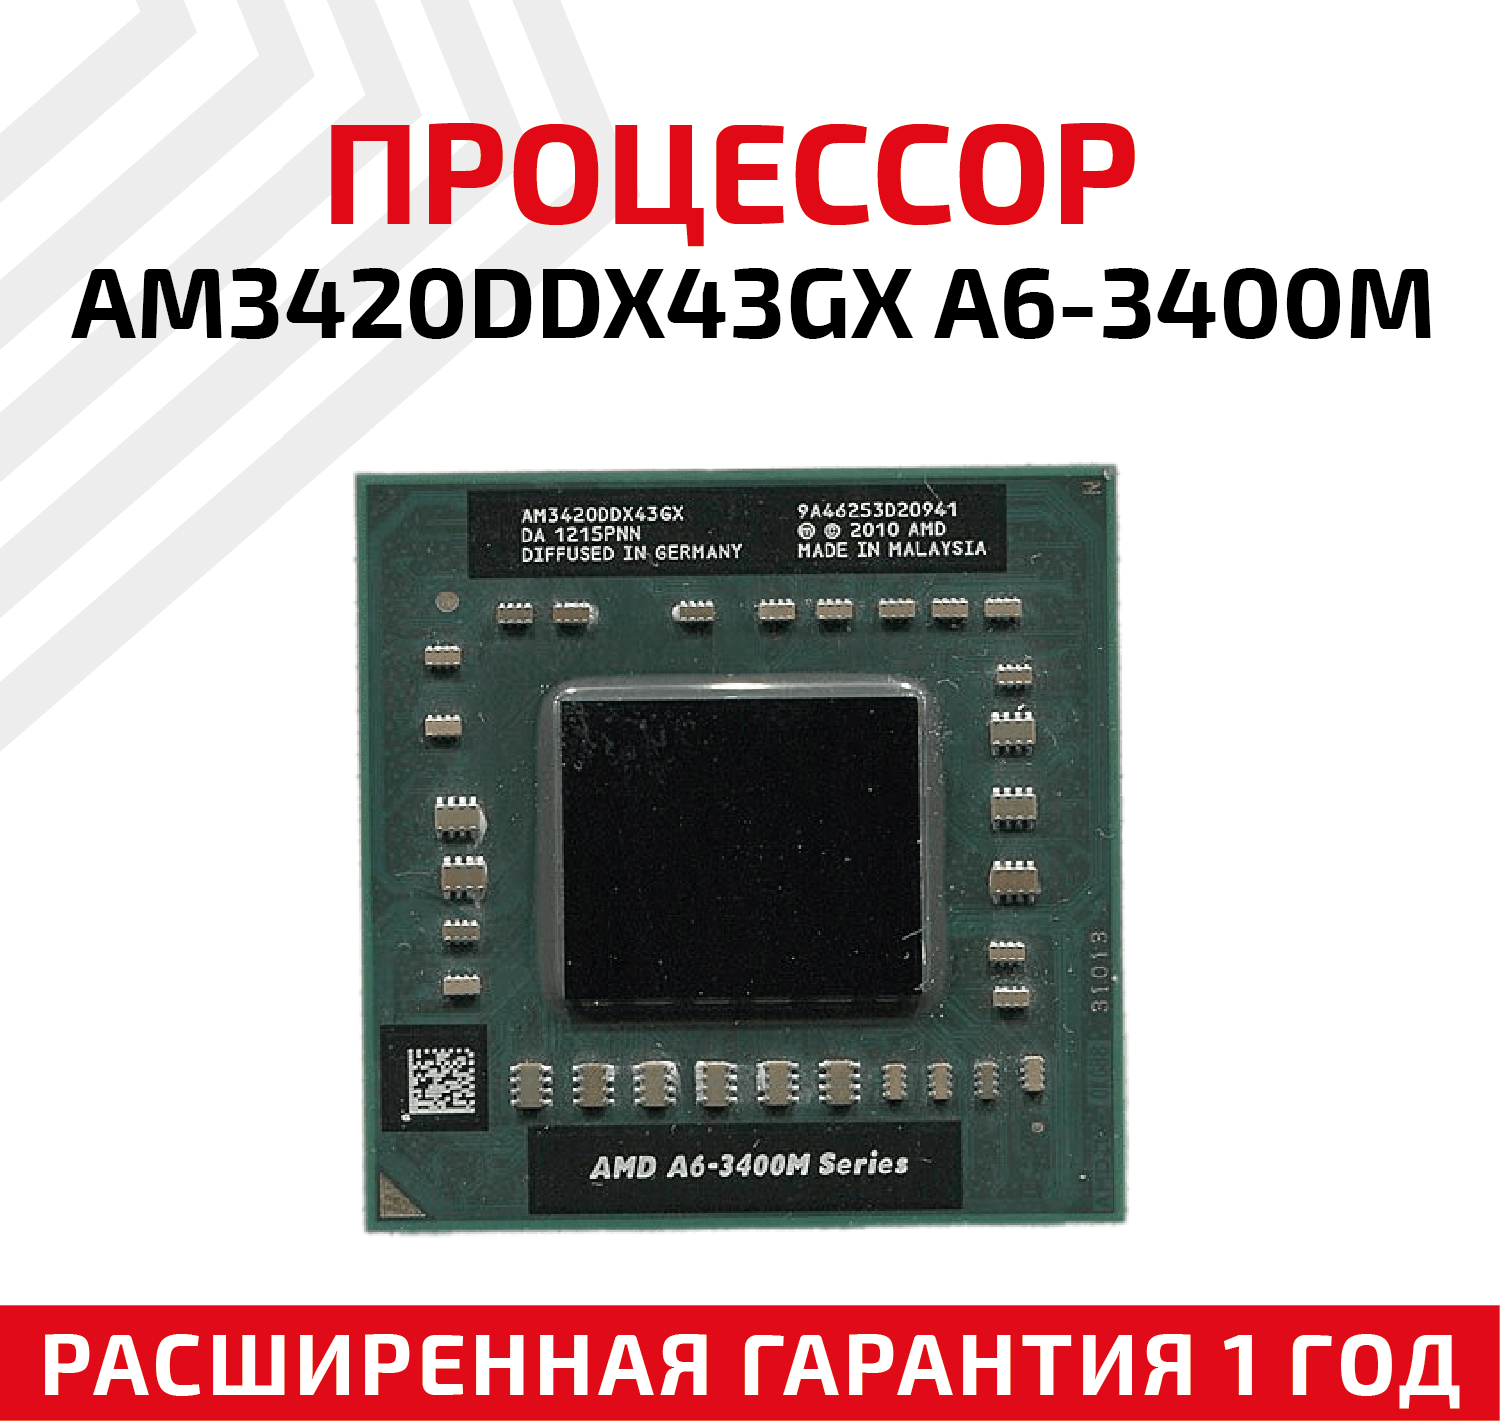 Процессор AMD AM3420DDX43GX A6-3400M 2.3 ГГц для ноутбука